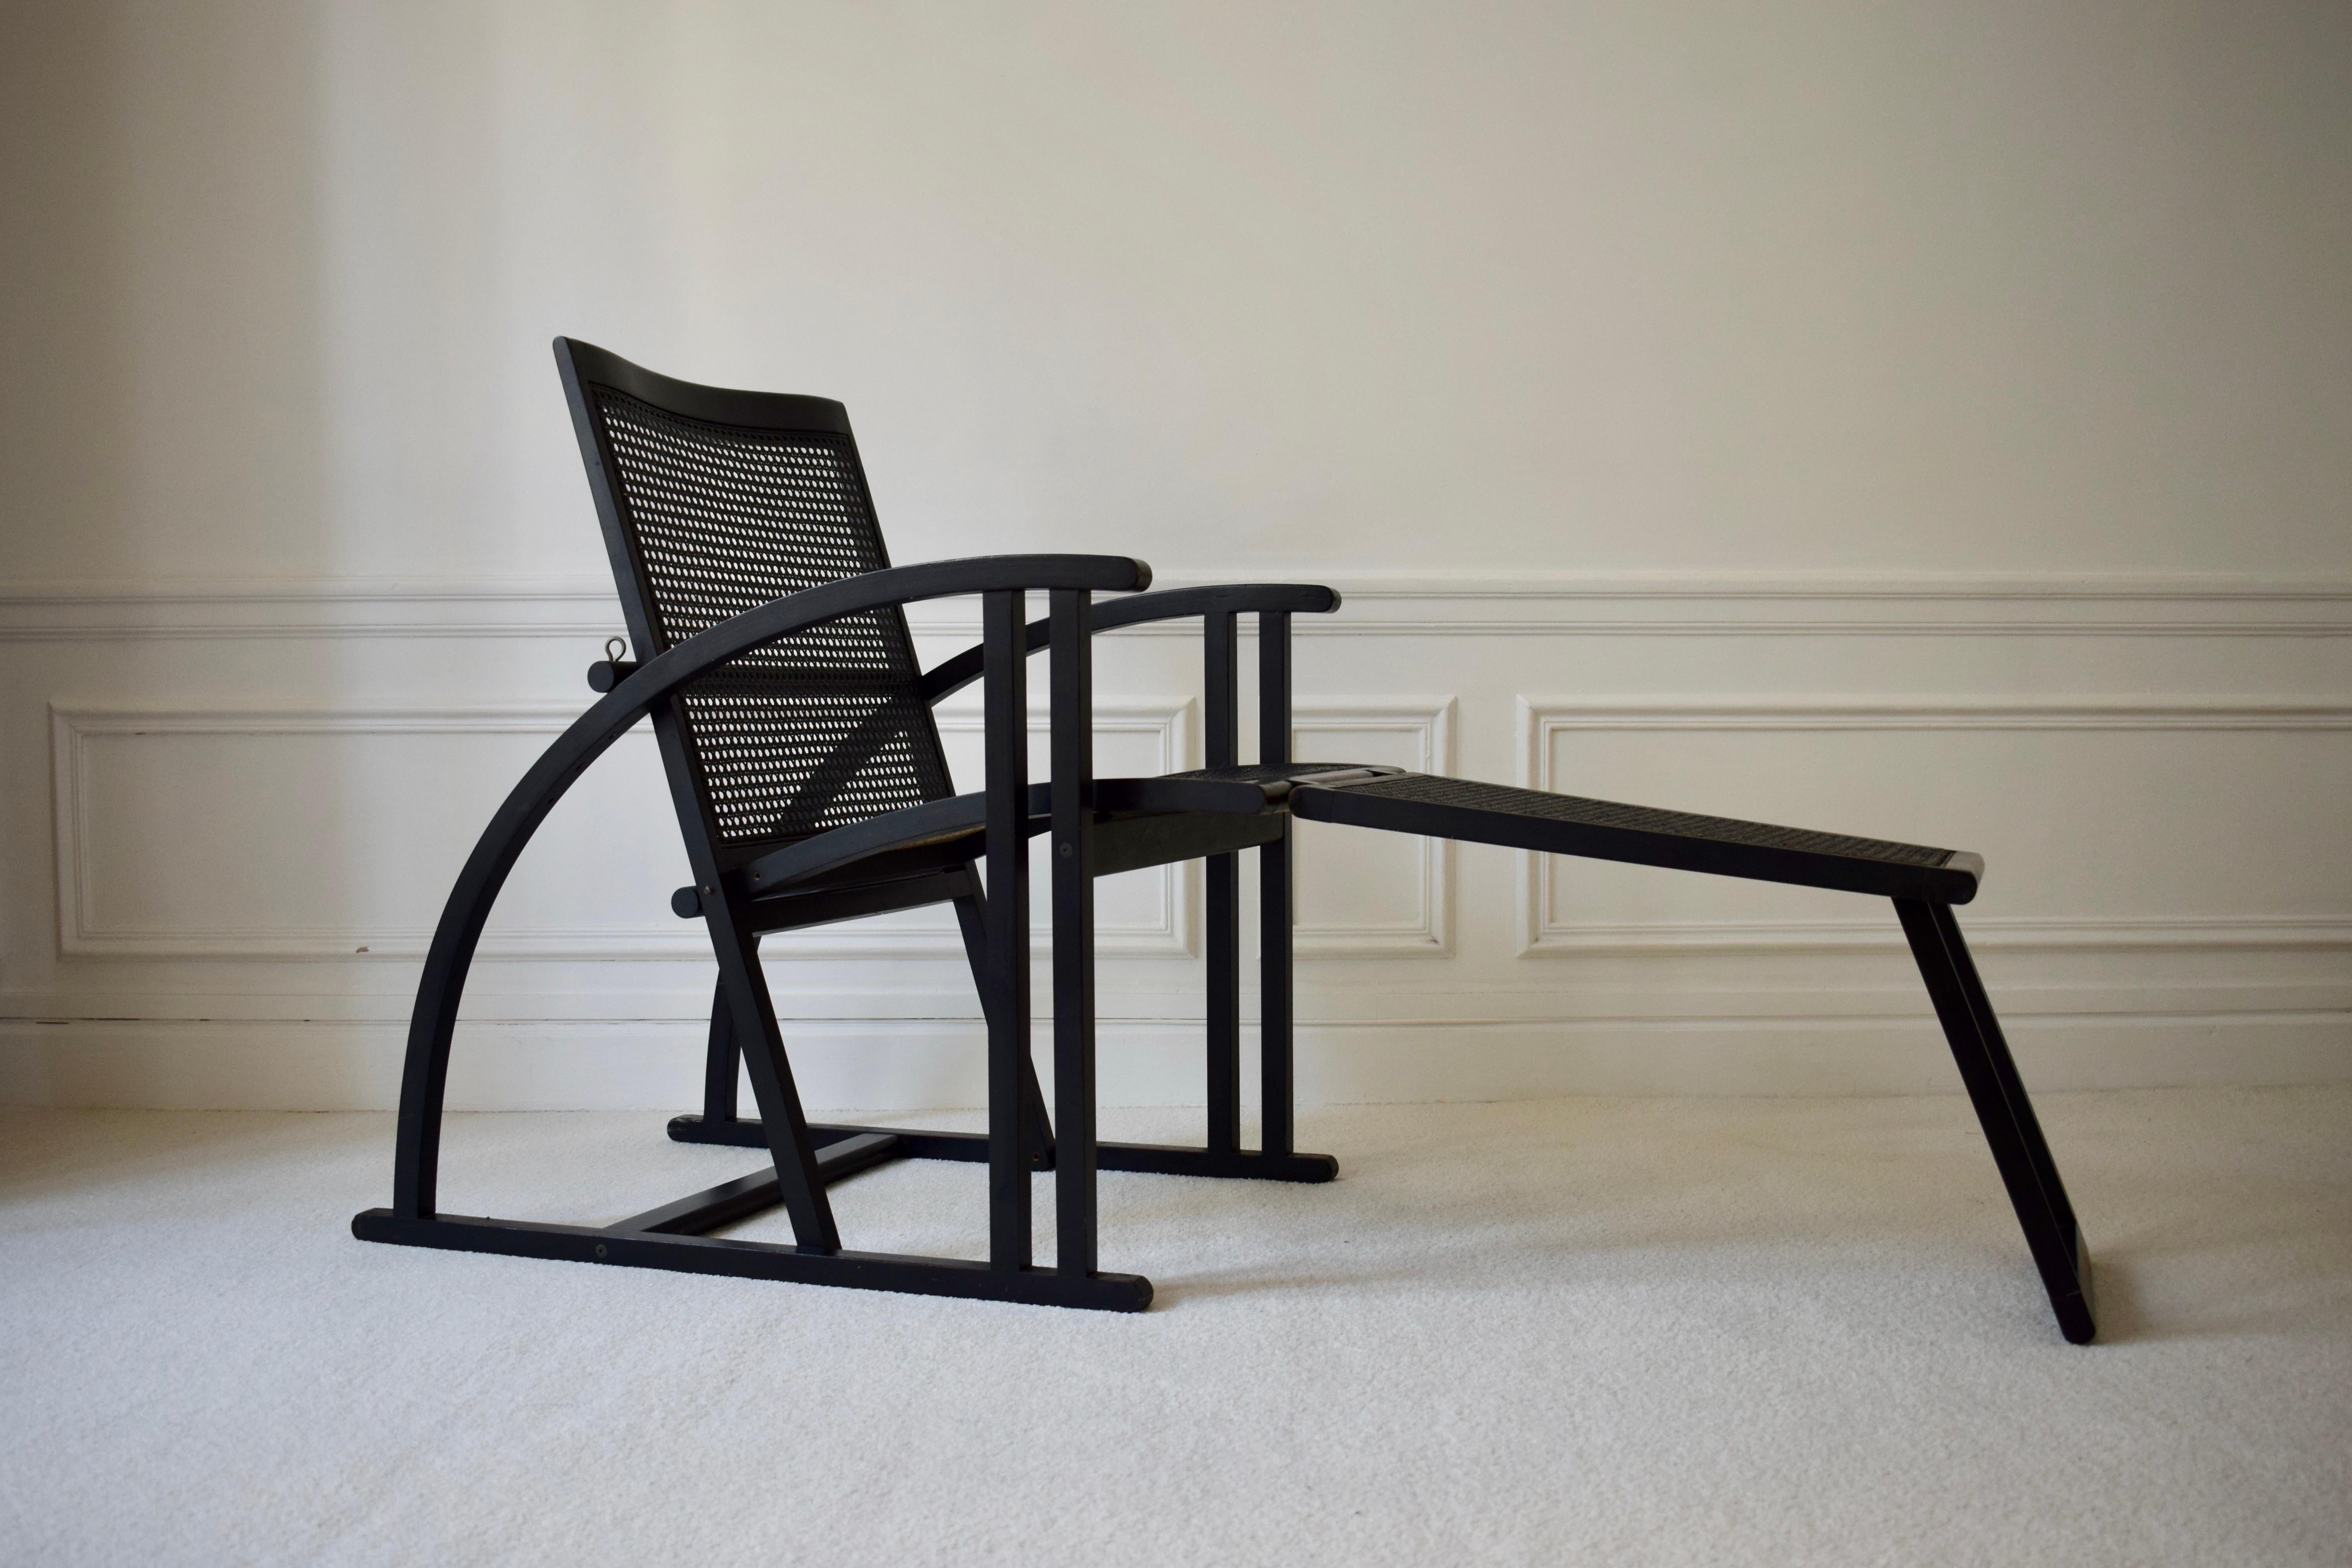 Chaise longue Arc de Pascal Mourgue pour Pamco Triconfort In Good Condition For Sale In PARIS, FR